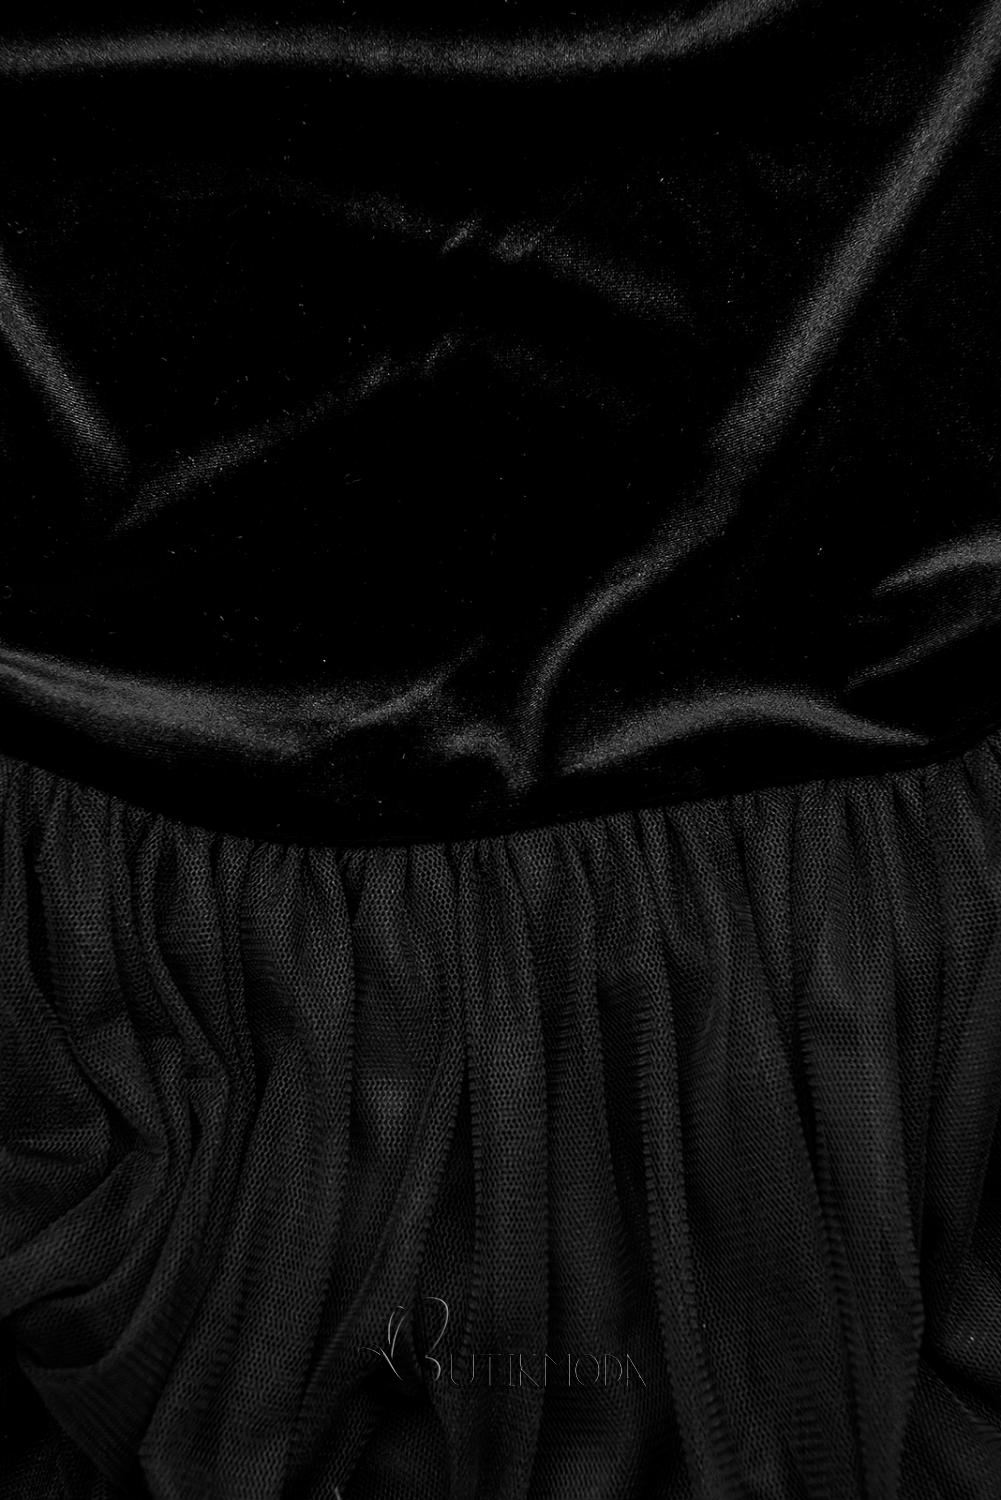 Kleid mit Tüllrock schwarz